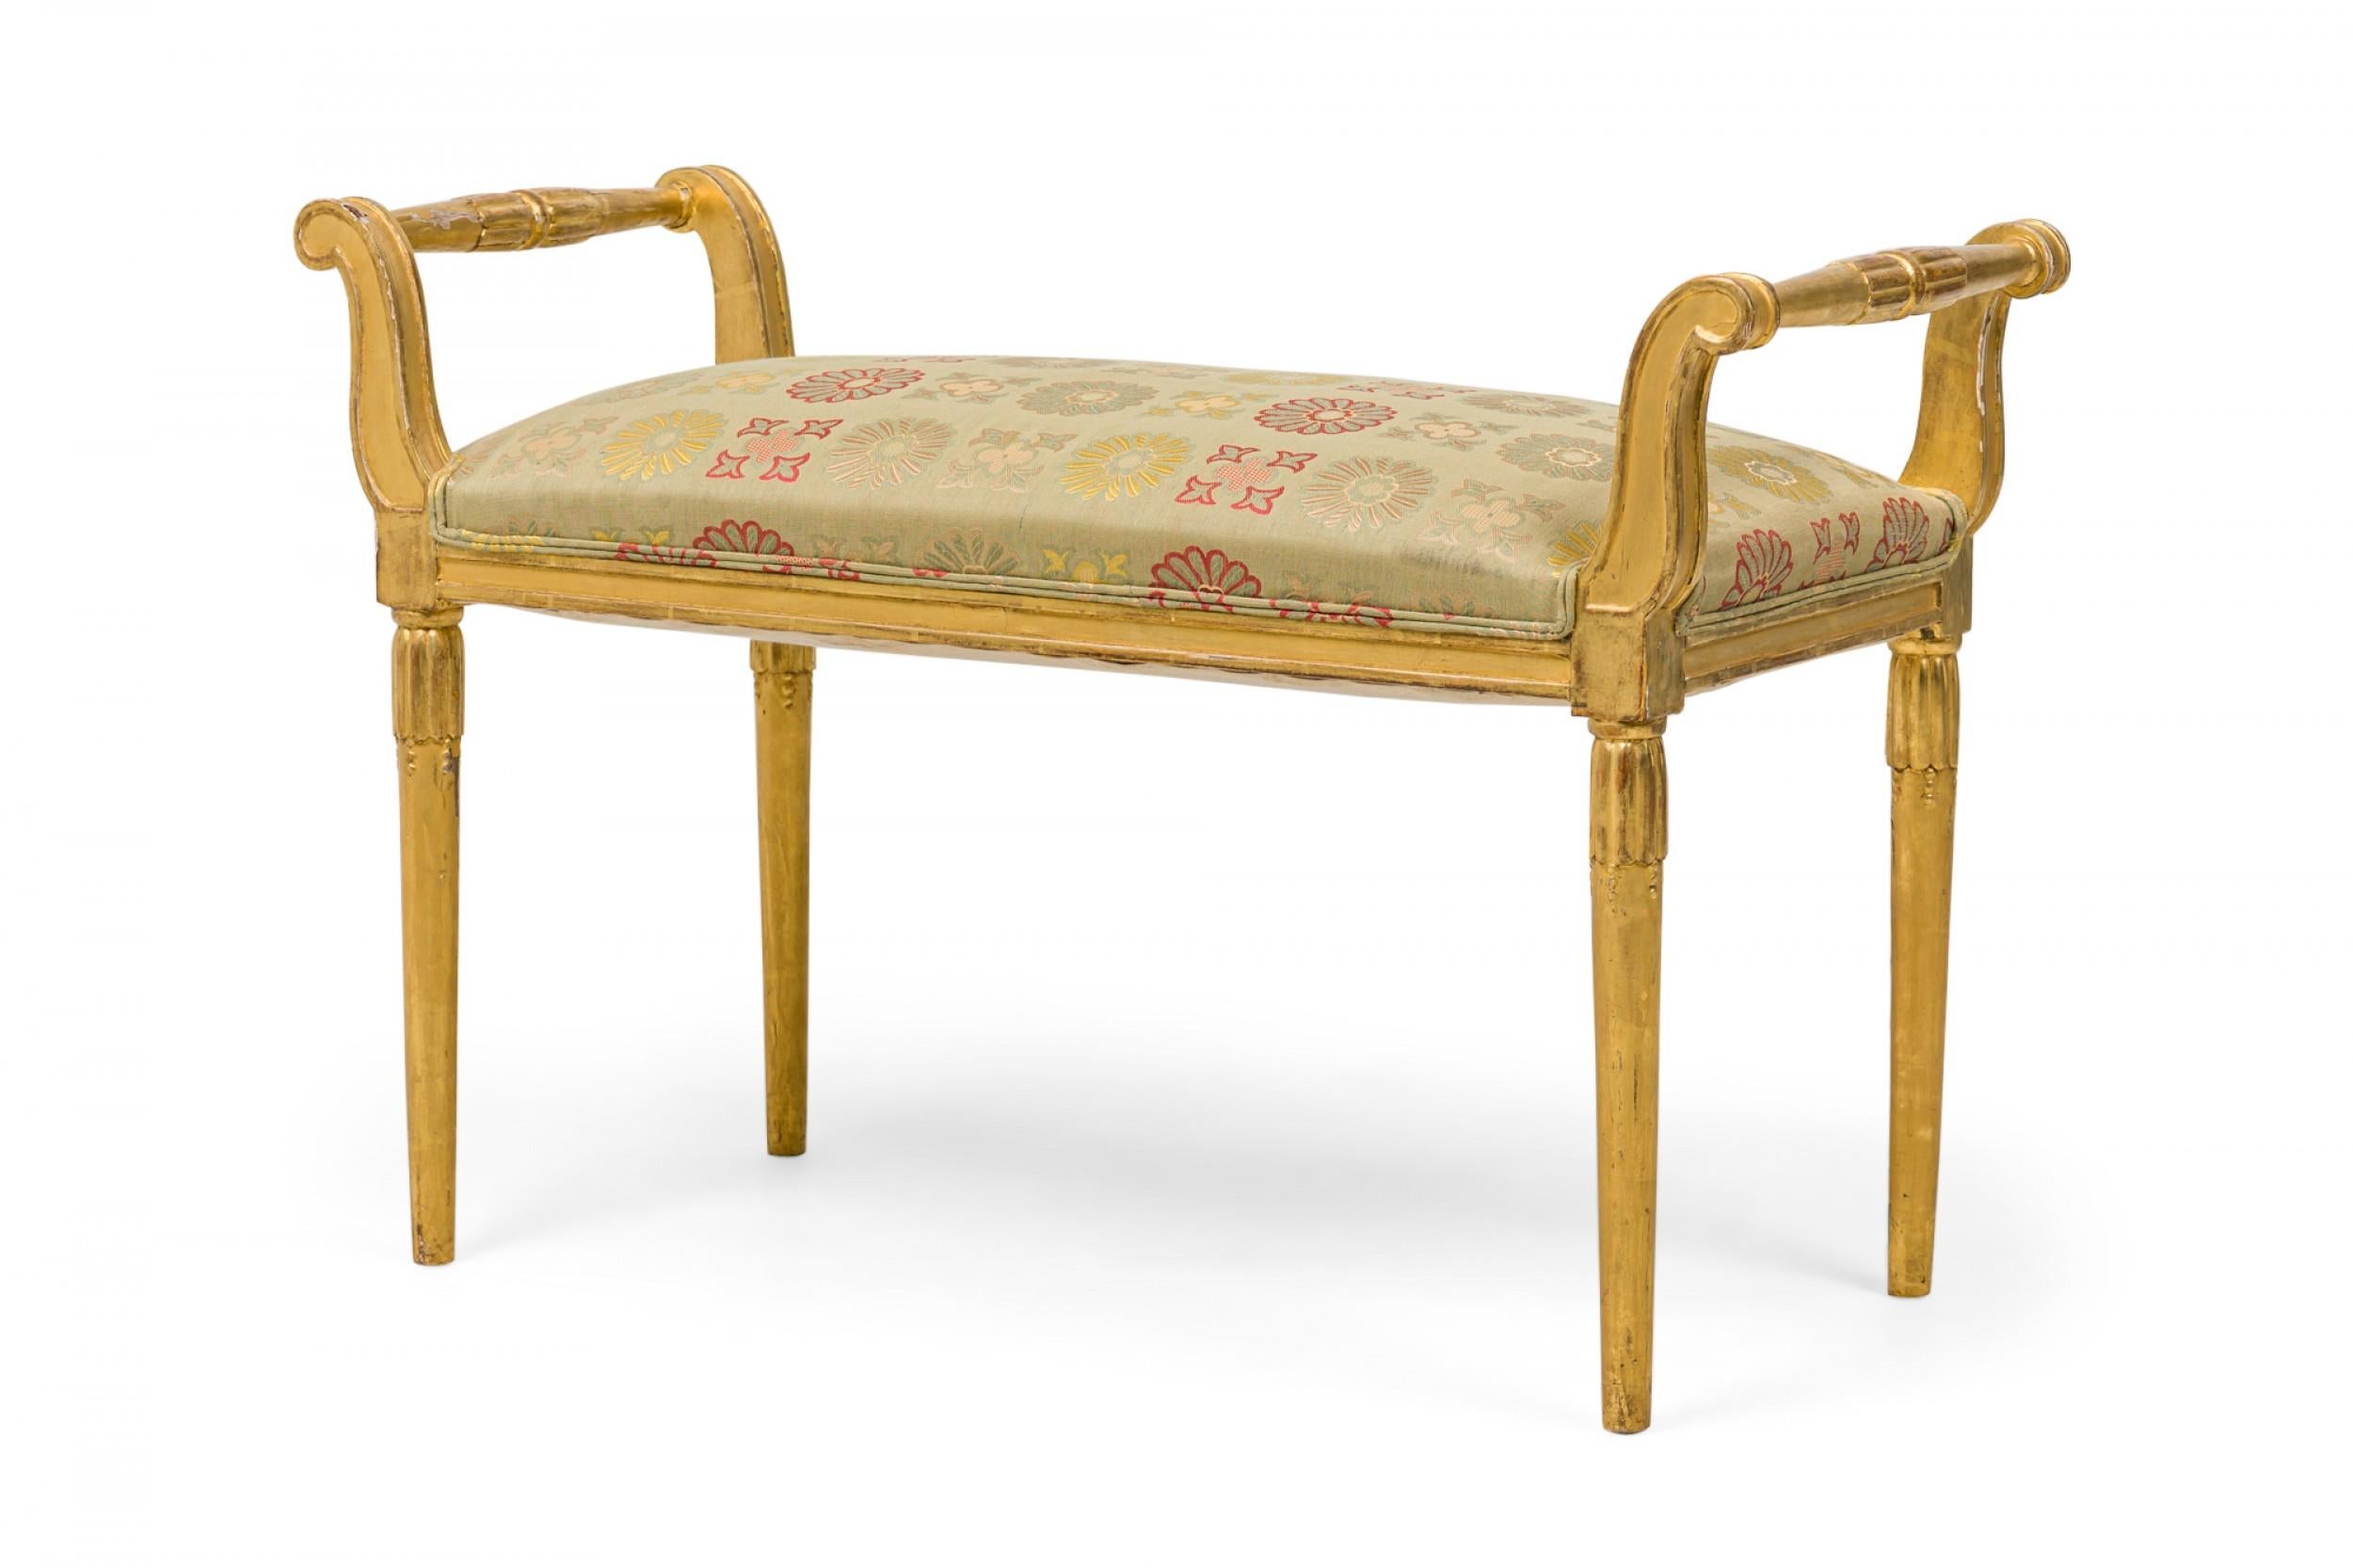 Französische rechteckige Bank aus vergoldetem Holz im Art Déco-Stil (frühes 20. Jahrhundert) mit nach außen ausgestellten Griffen in Form einer Schnecke und geschnitzten, kannelierten Verzierungen. Die Sitzfläche ist gepolstert und mit einem blass